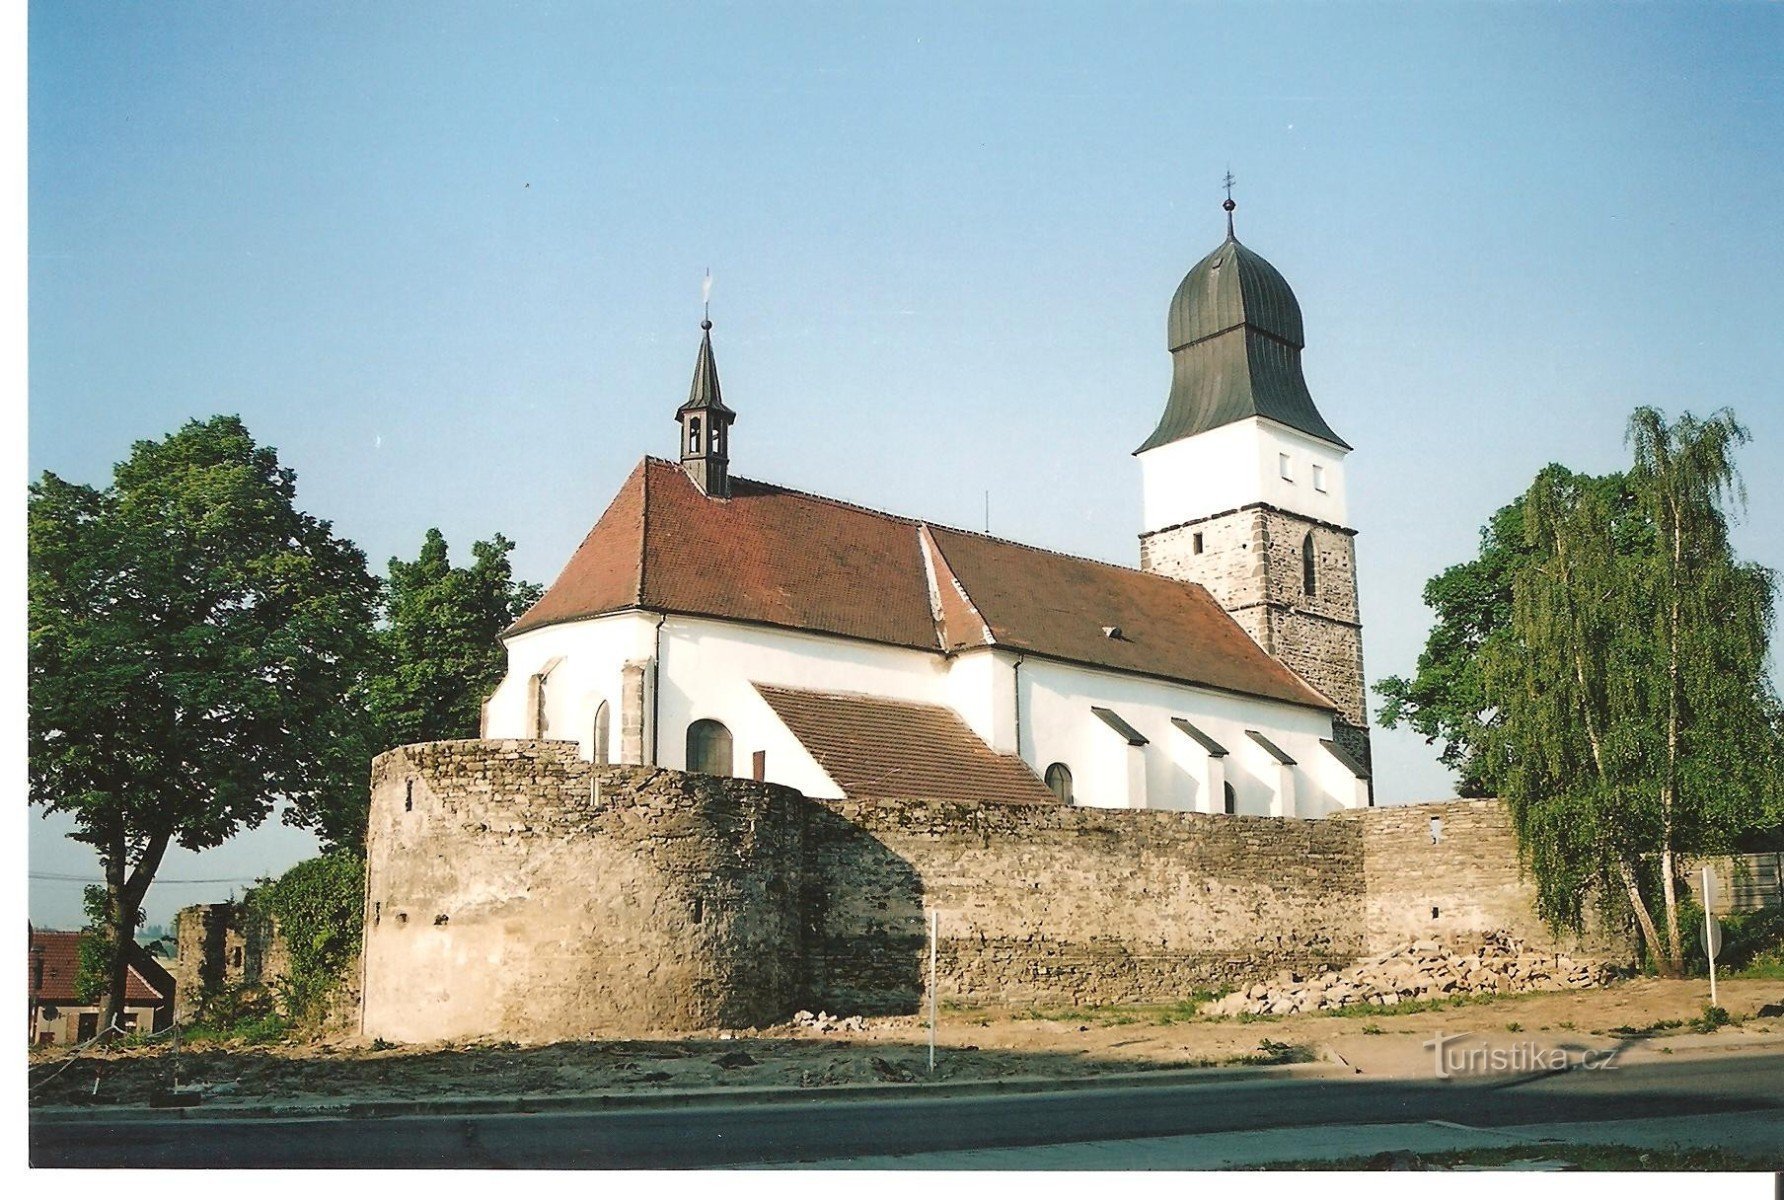 Velká Bíteš - fortified church